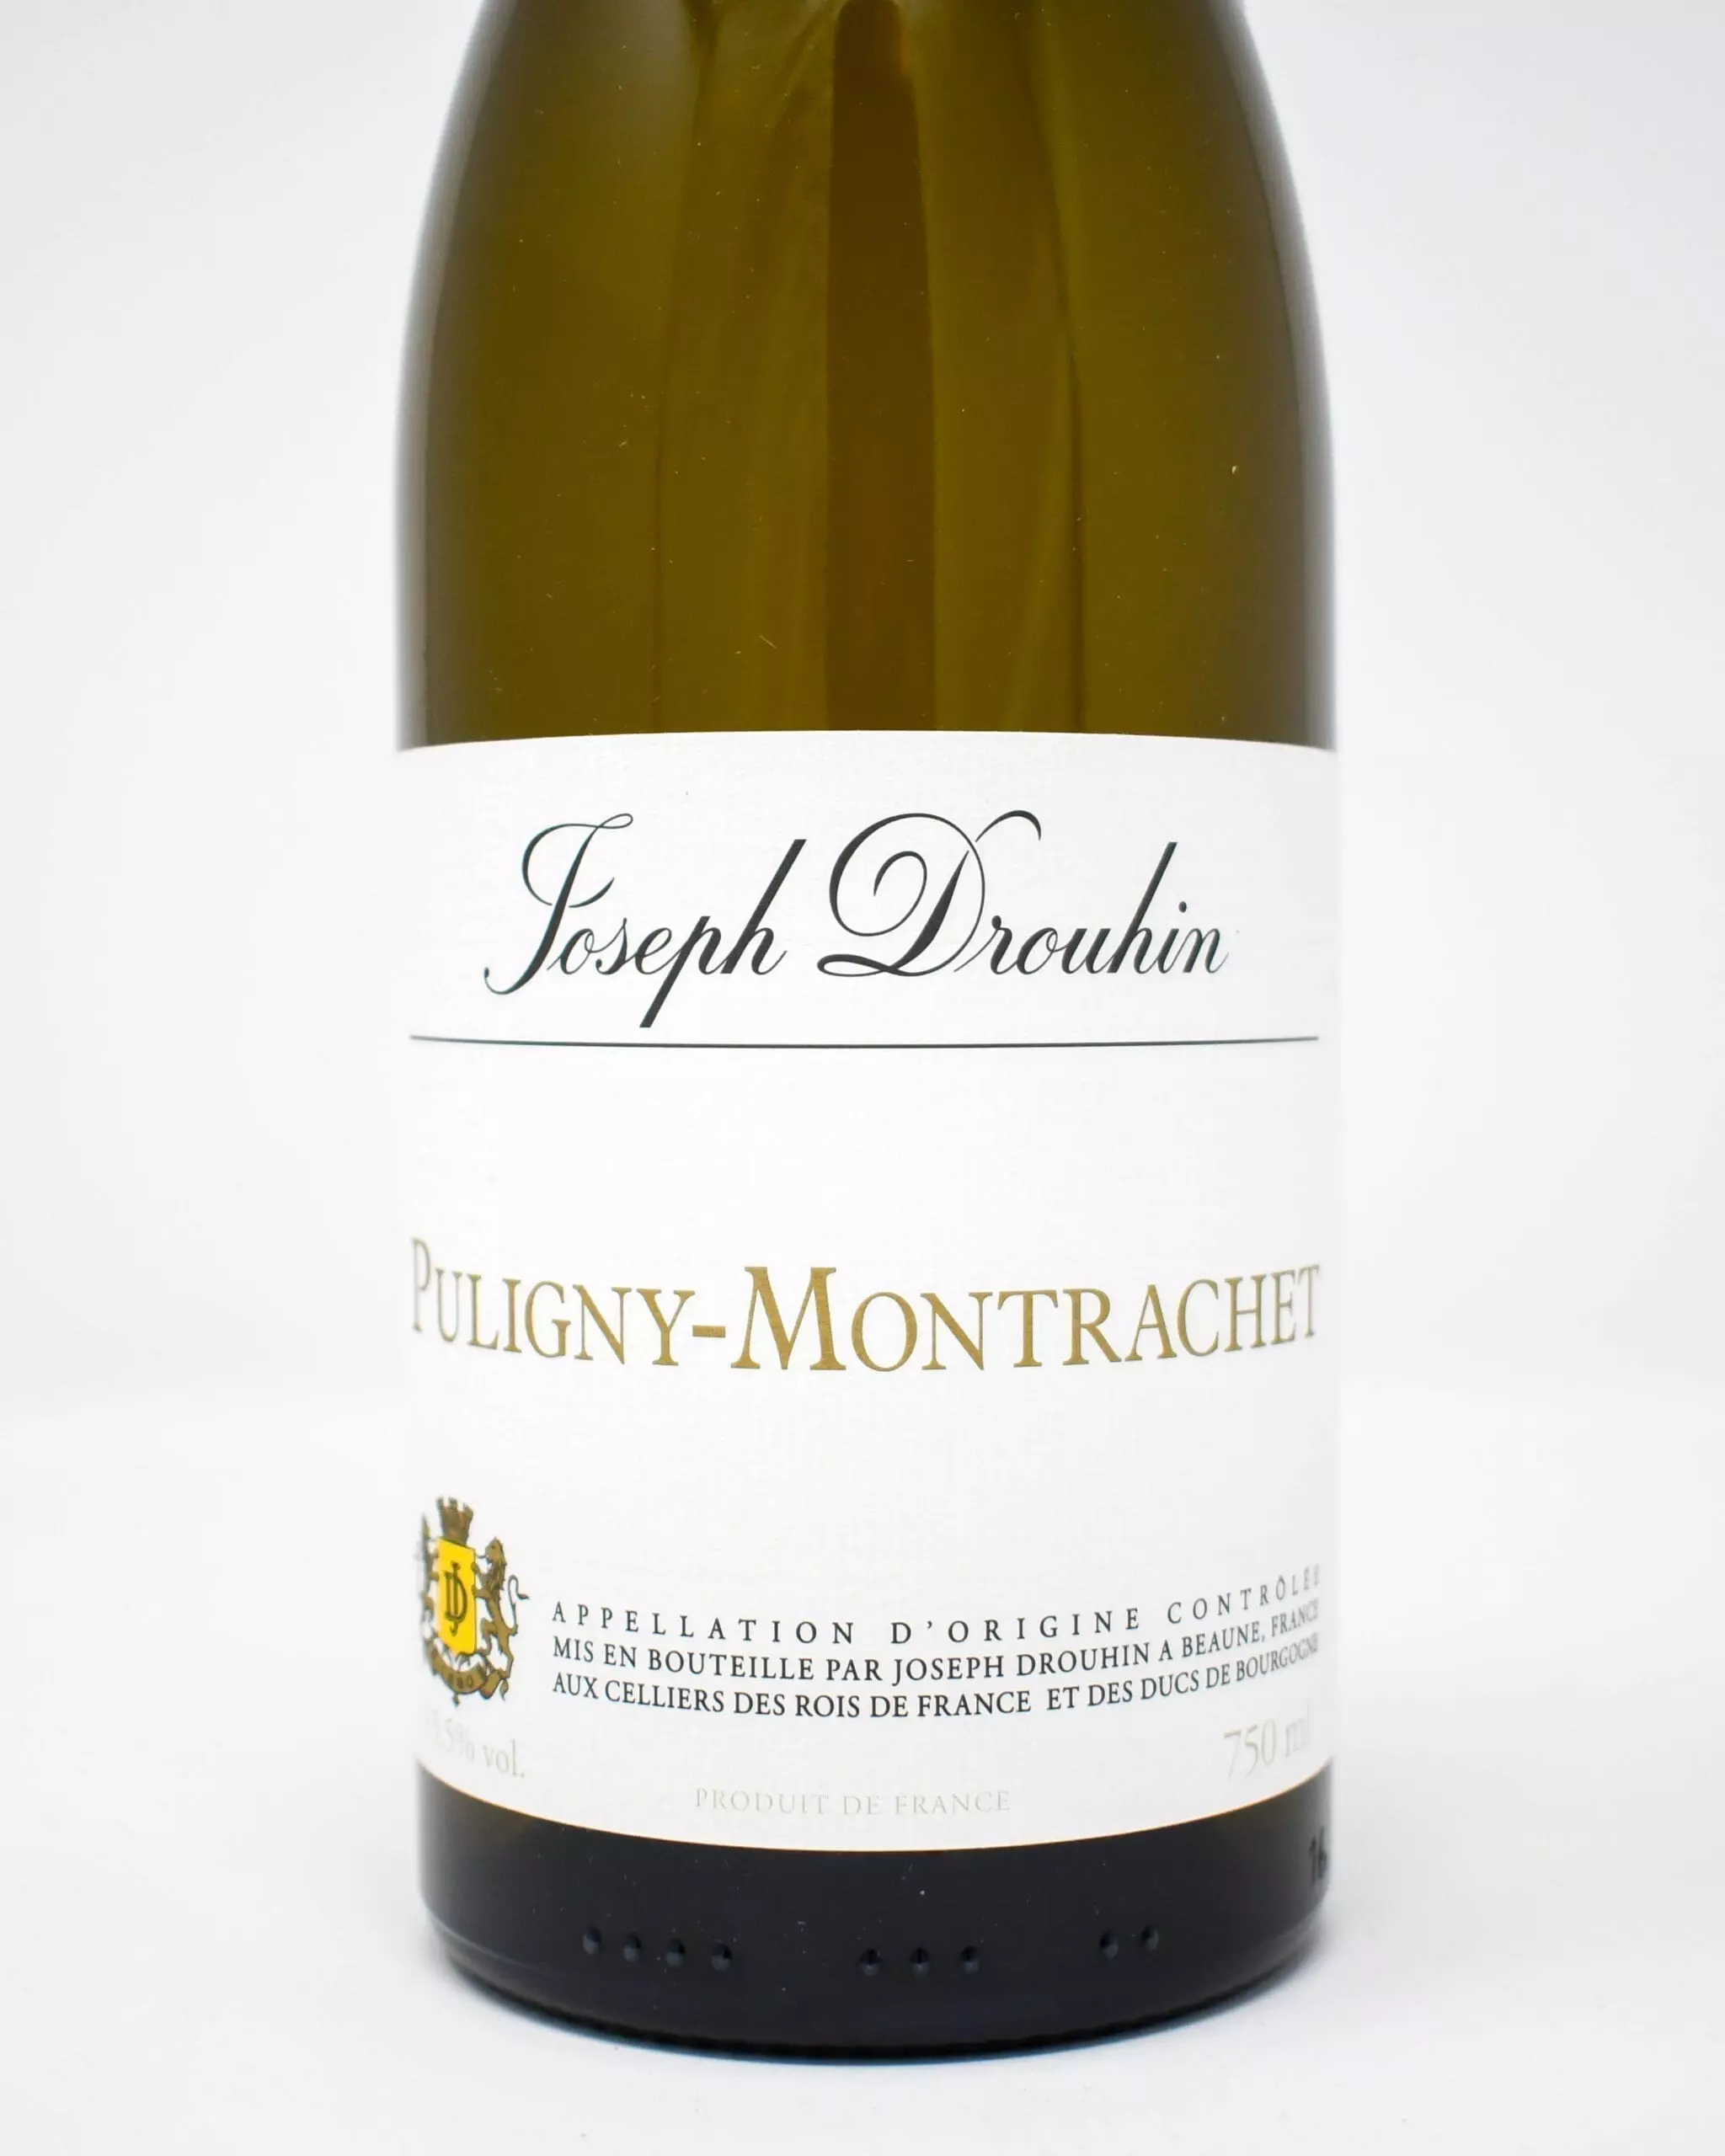 Joseph Drouhin, Puligny-Montrachet